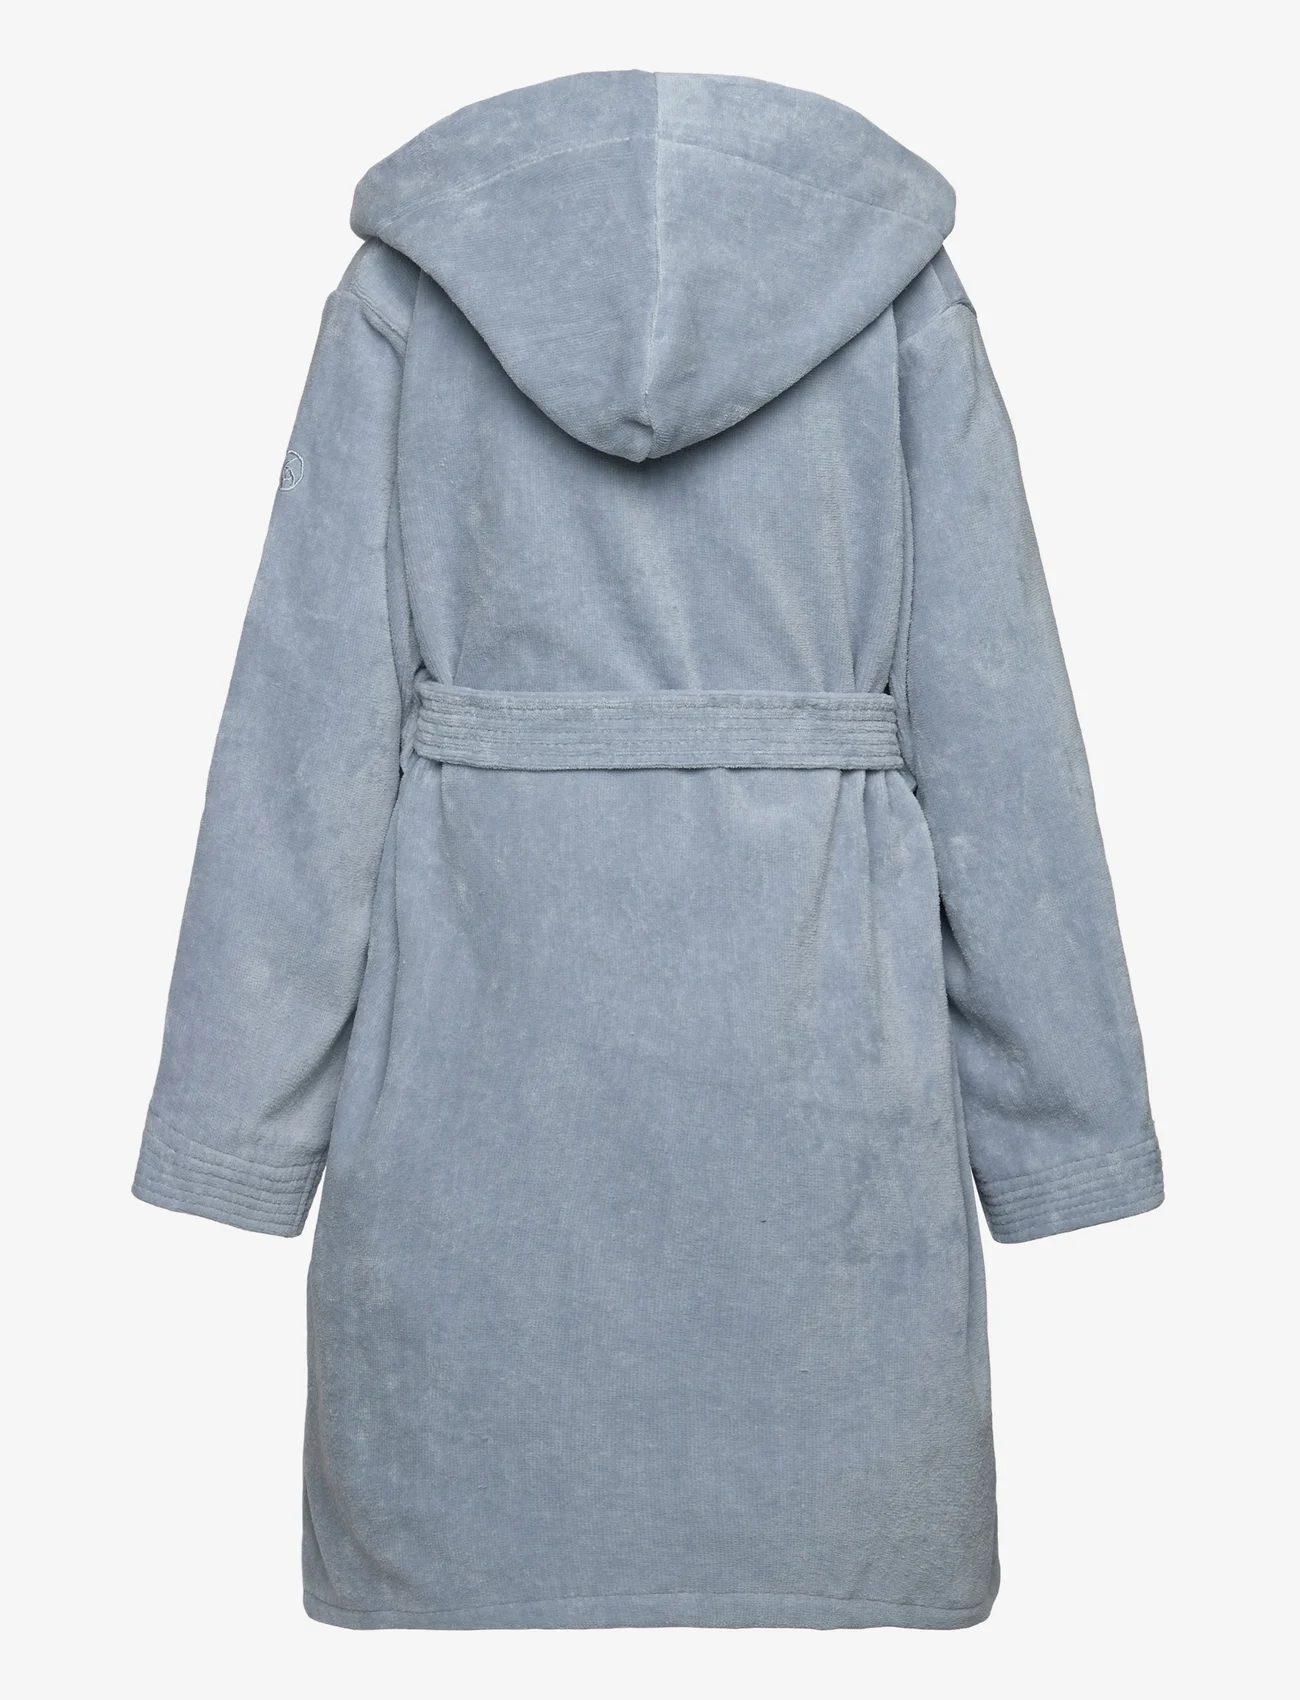 Rosemunde Kids - Organic robe - nacht- & unterwäsche - dusty blue - 1